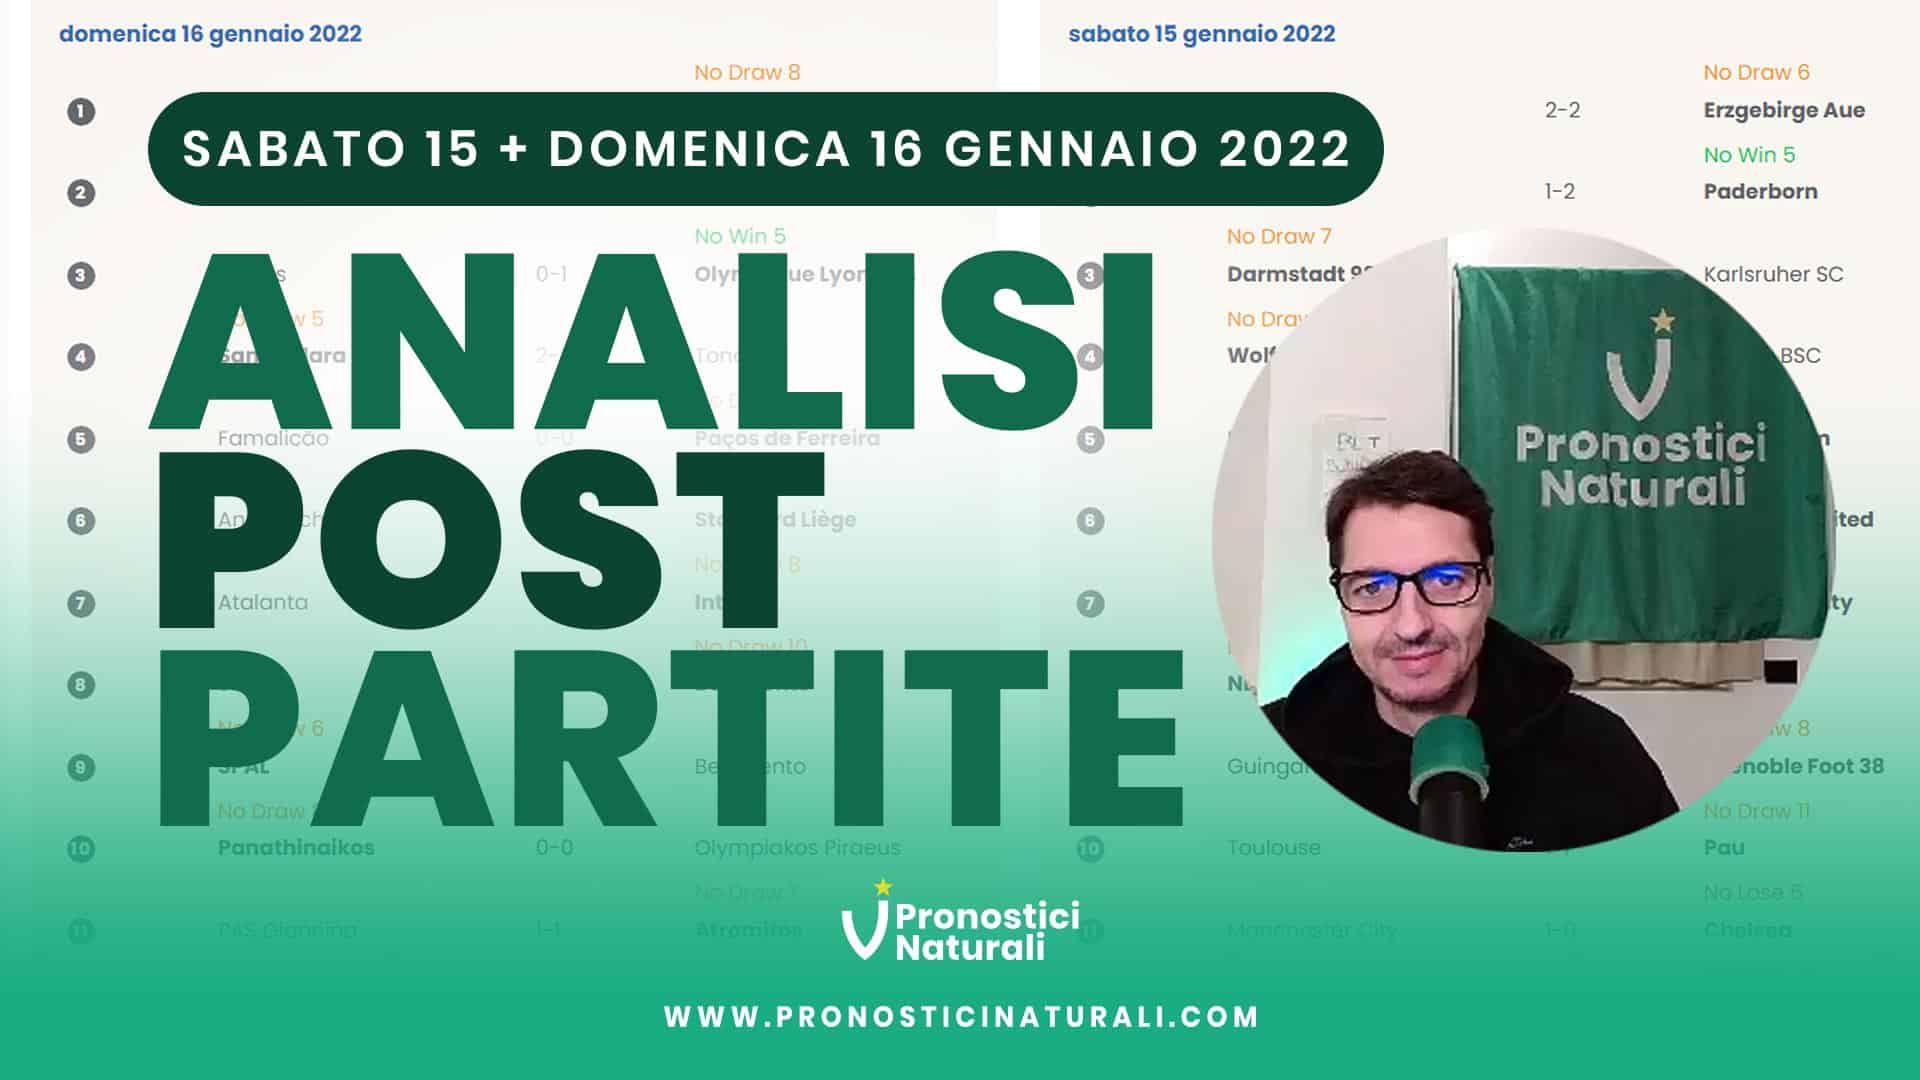 Pronostici Naturali Video Analisi Scommesse Betting Calcio Analisi Post Partite Sabato 15 Domenica 16 Gennaio 2022